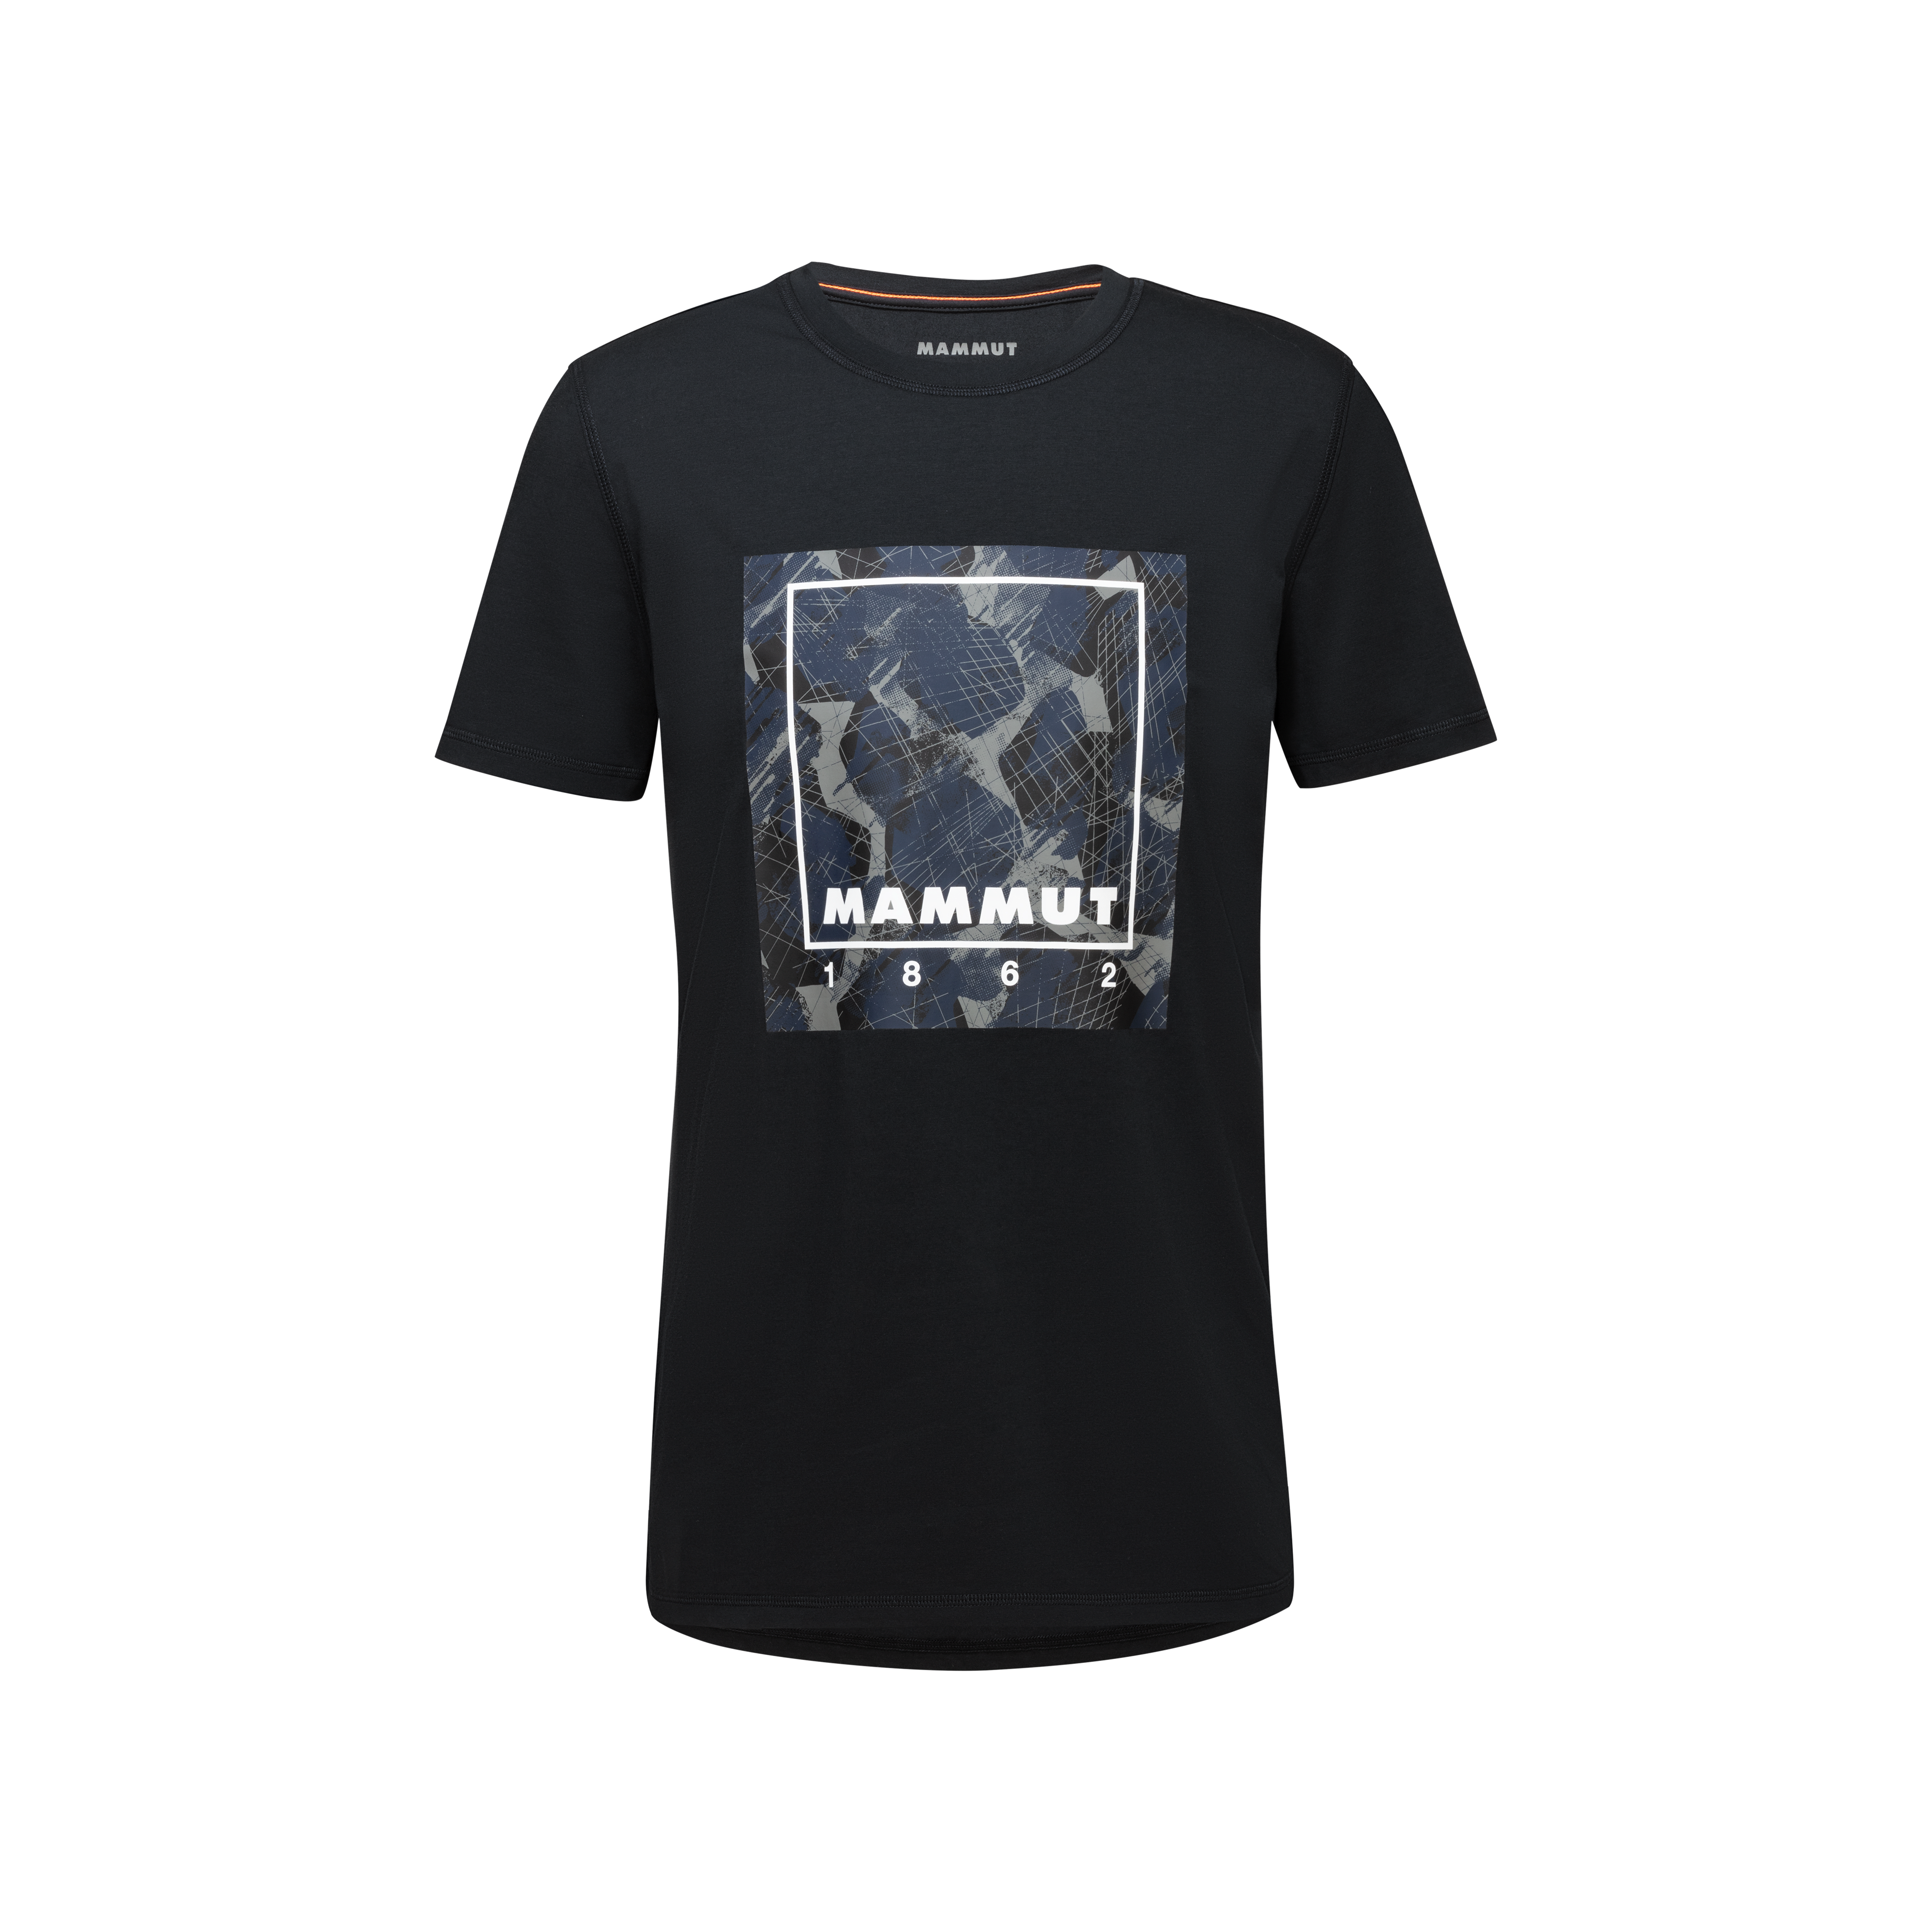 Mammut Graphic T-Shirt Men